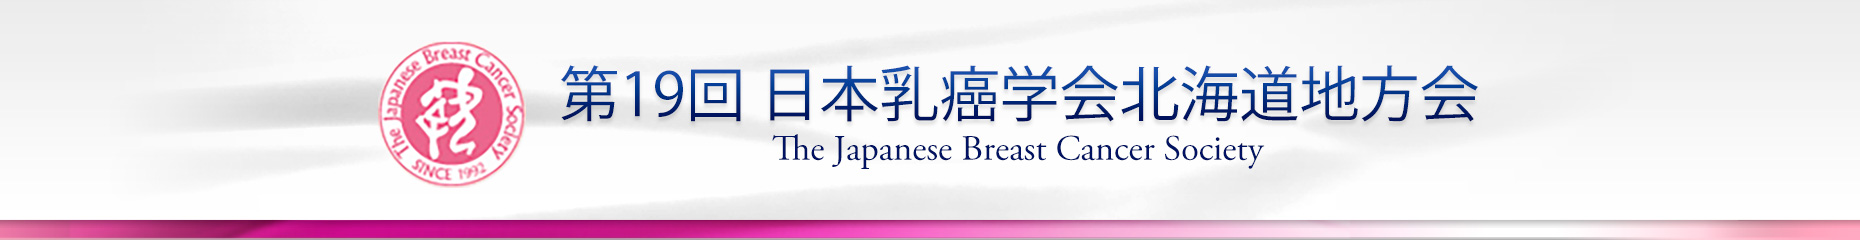 第19回日本乳癌学会北海道地方会